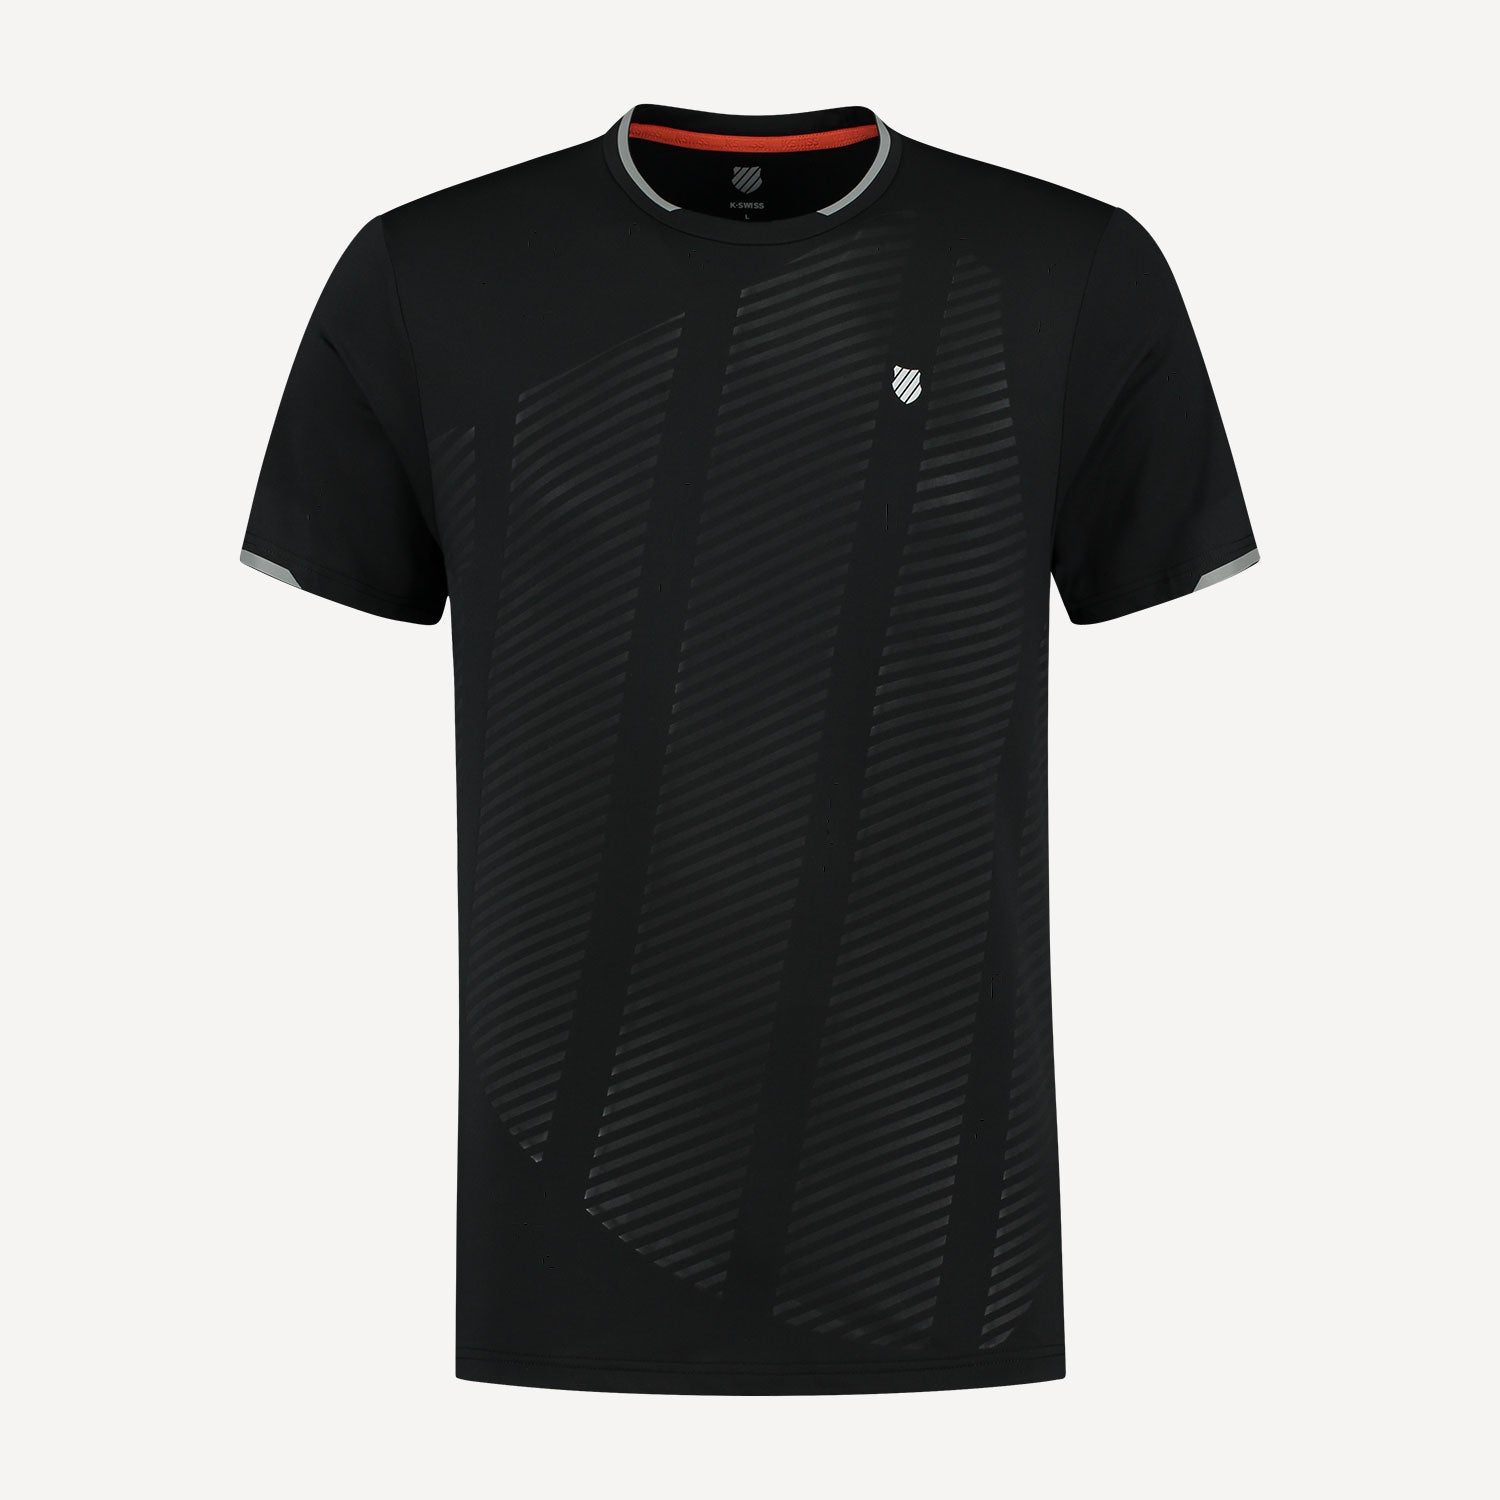 K-Swiss Hypercourt Shield Men's Tennis Shirt Black (1)